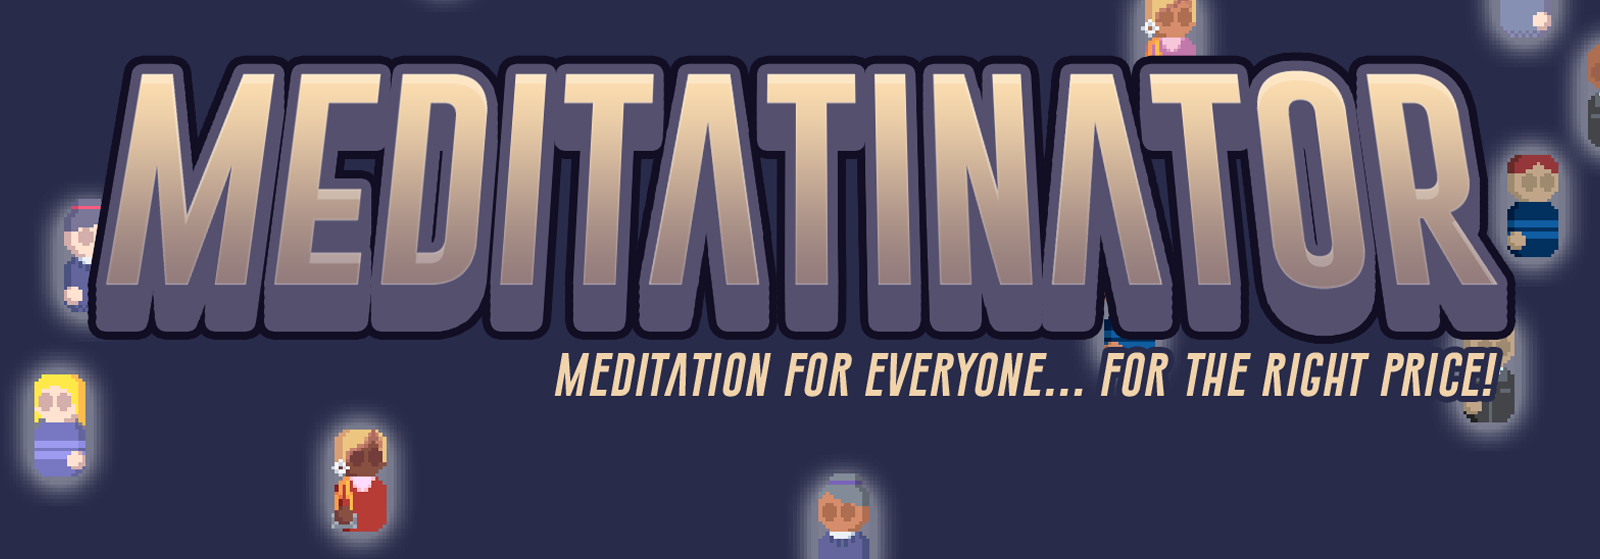 Meditatinator